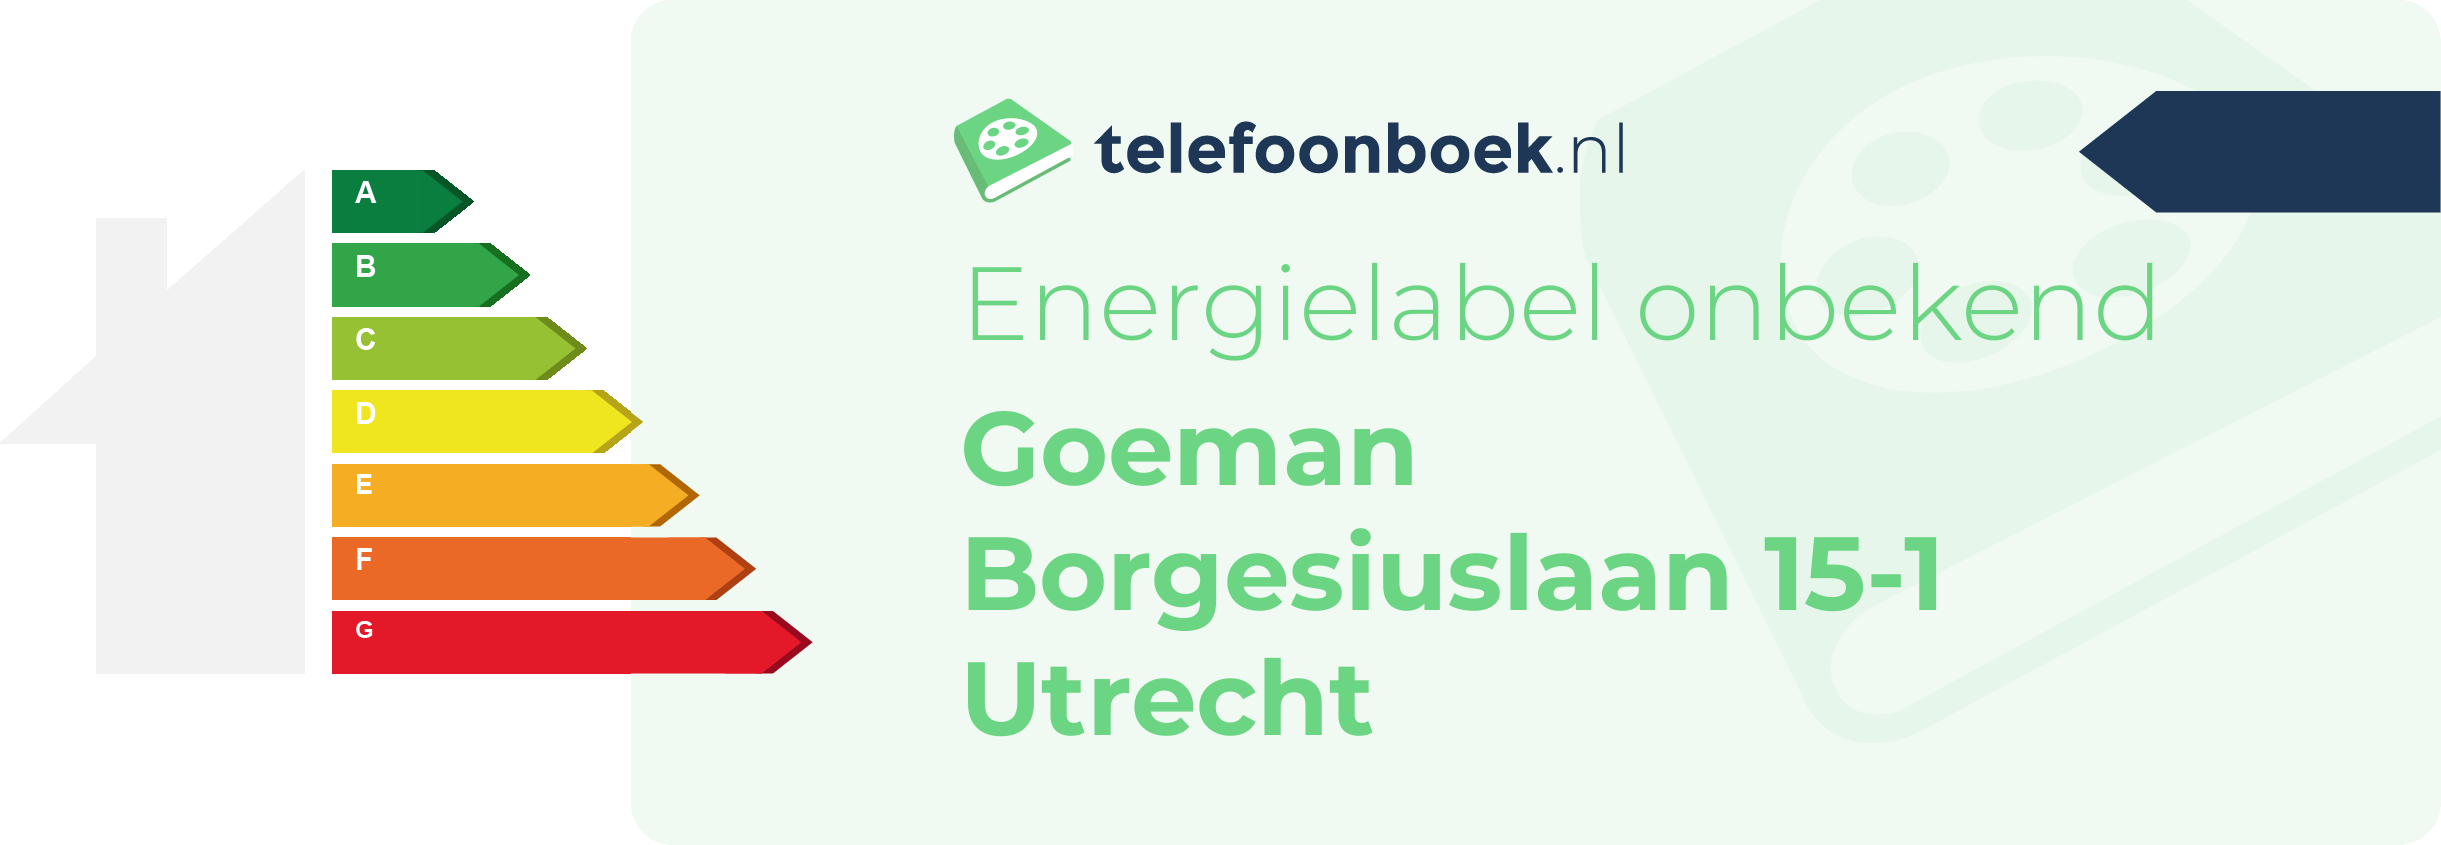 Energielabel Goeman Borgesiuslaan 15-1 Utrecht